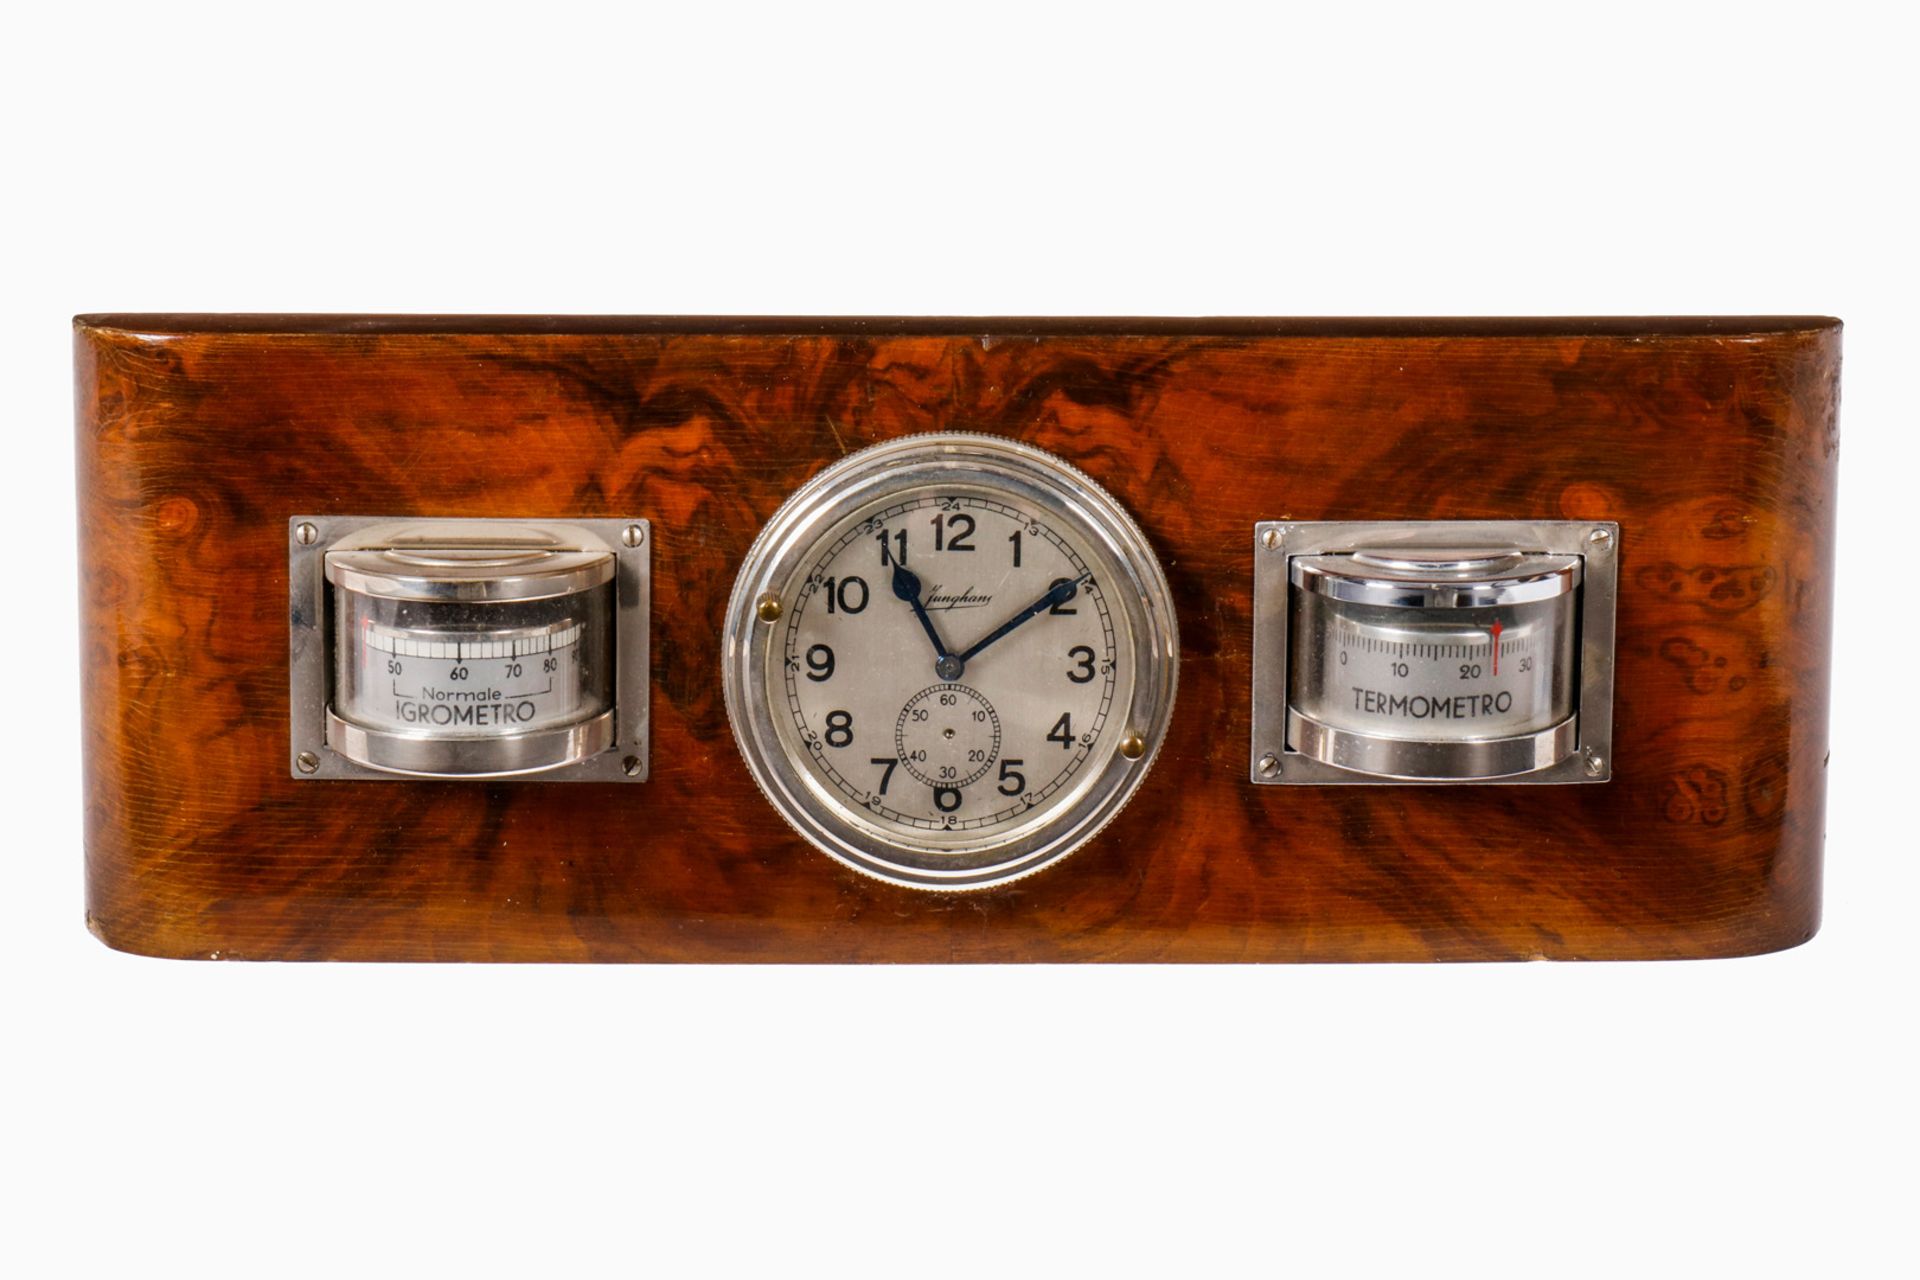 Instrumententafel, Holz, mit Junghans Uhr, Igrometro und Thermometro, 20er Jahre, Sekundenzeiger